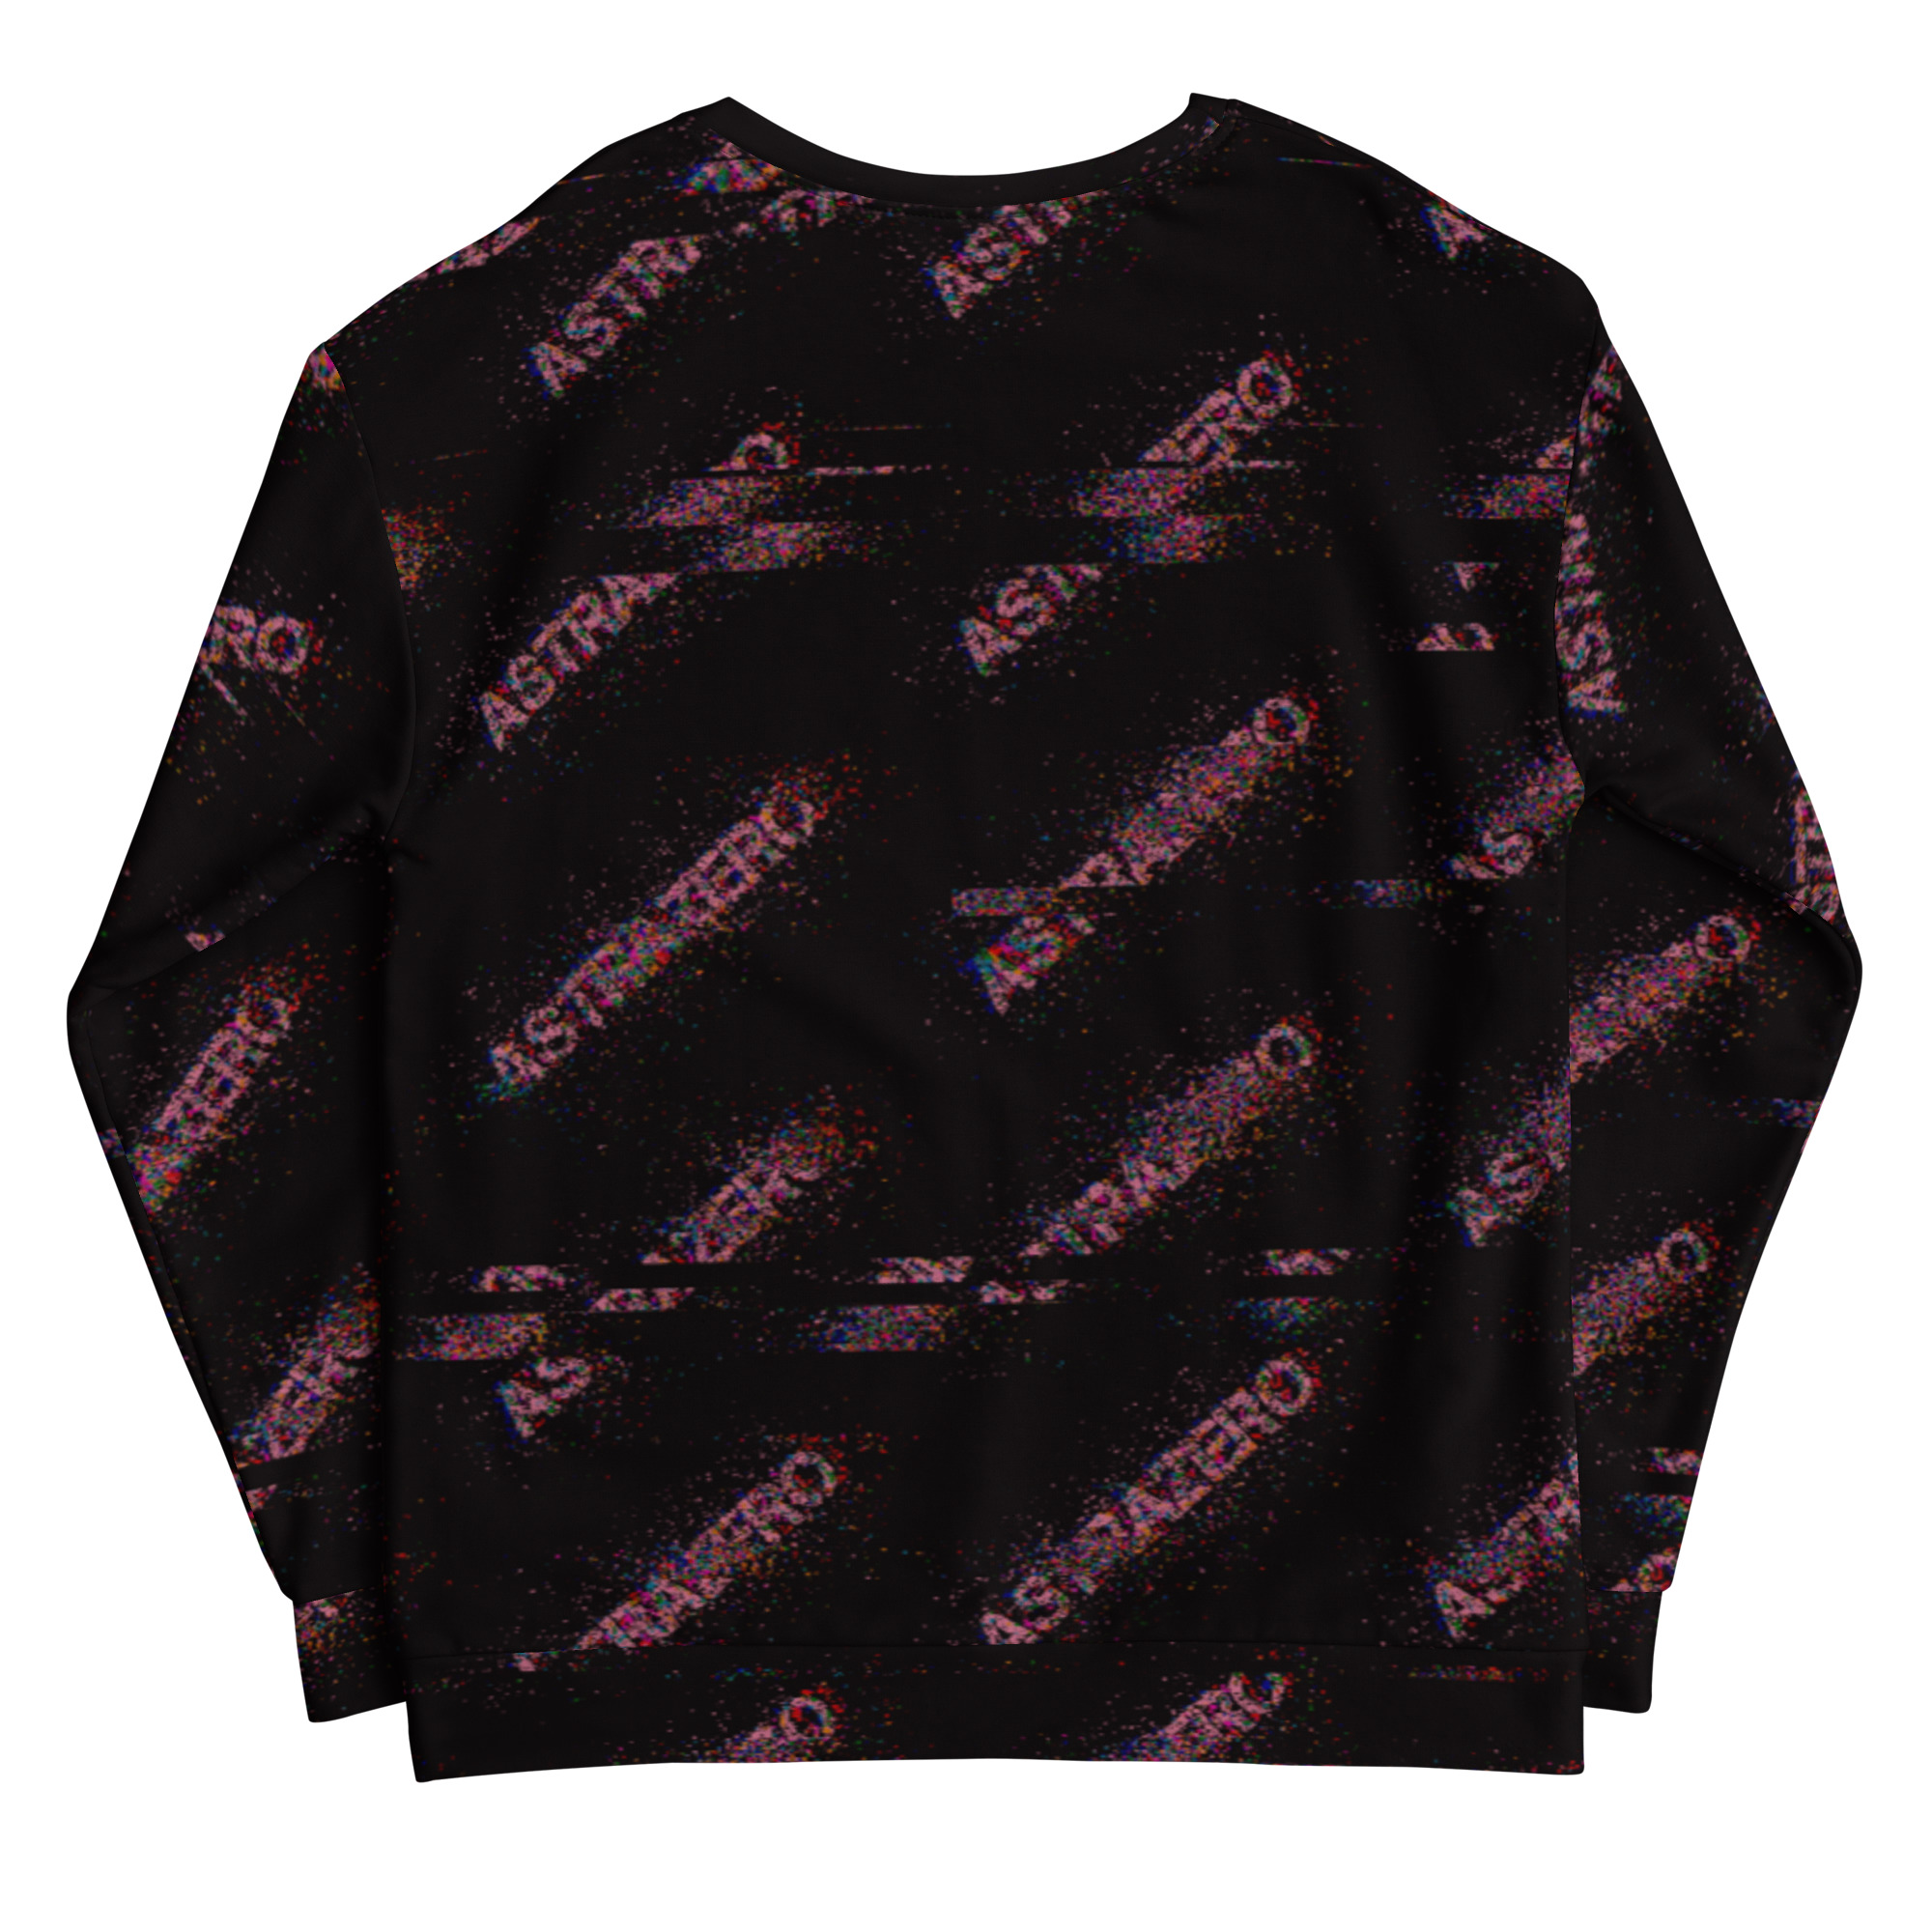 Featured image for “ASTRAZERO Glitch Pink - Unisex Sweatshirt”